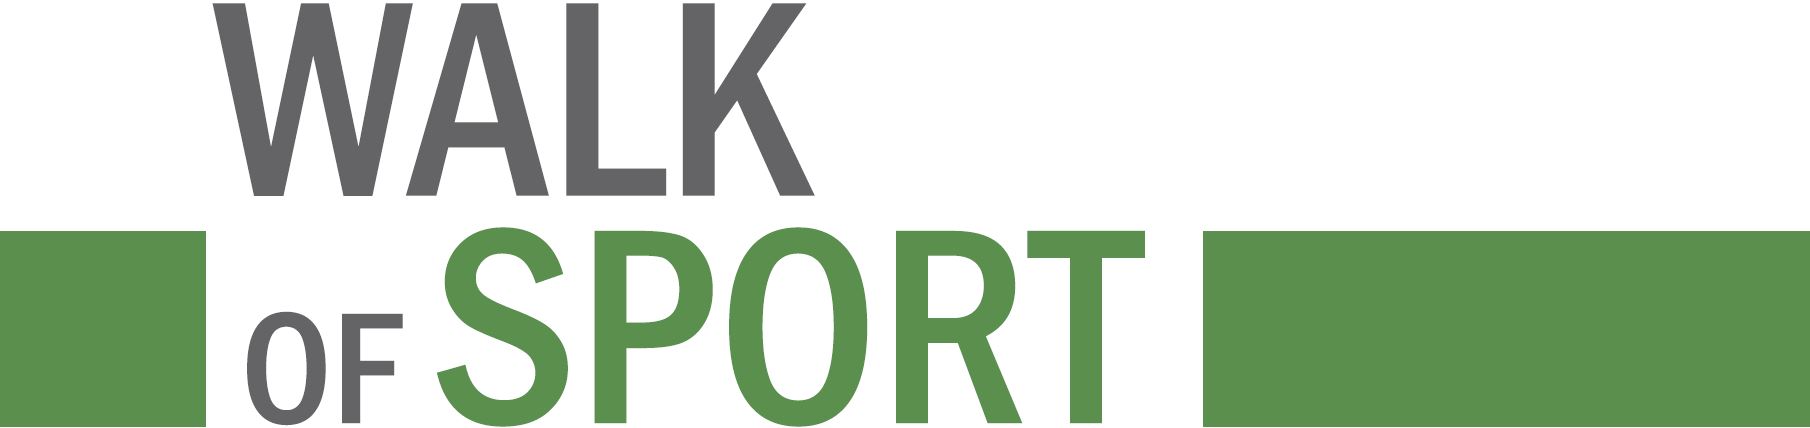 Walk of Sport - Logo